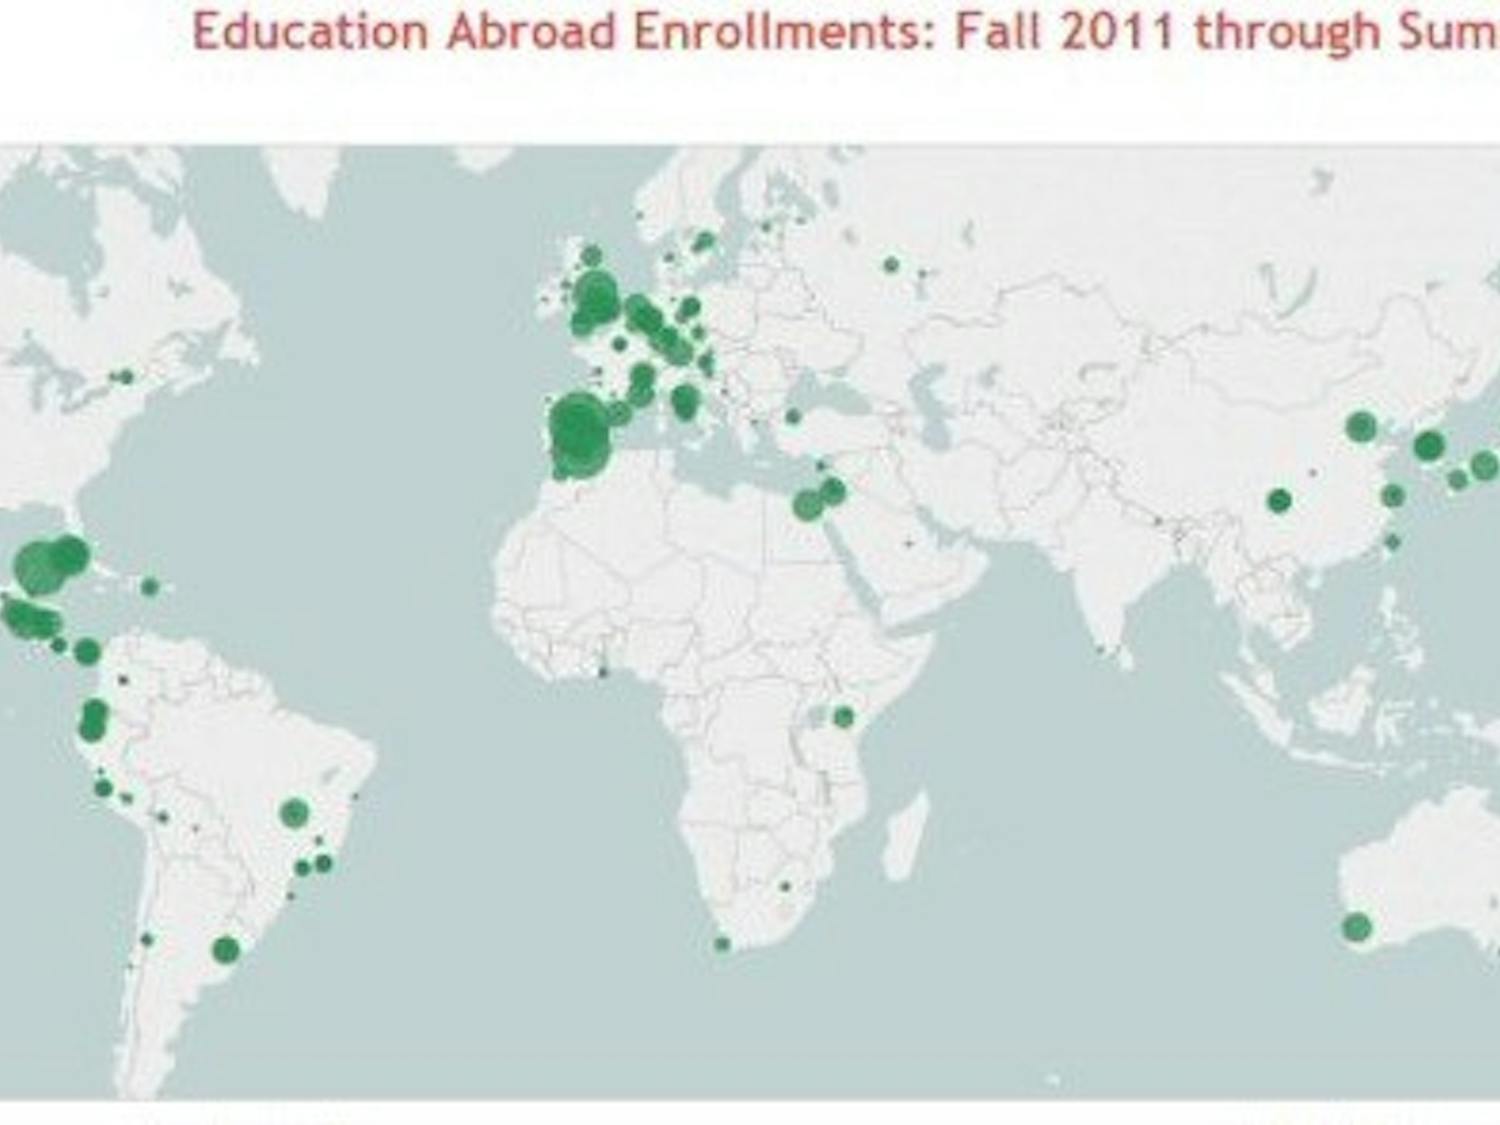 Green dots represent Education Abroad Enrollments. 